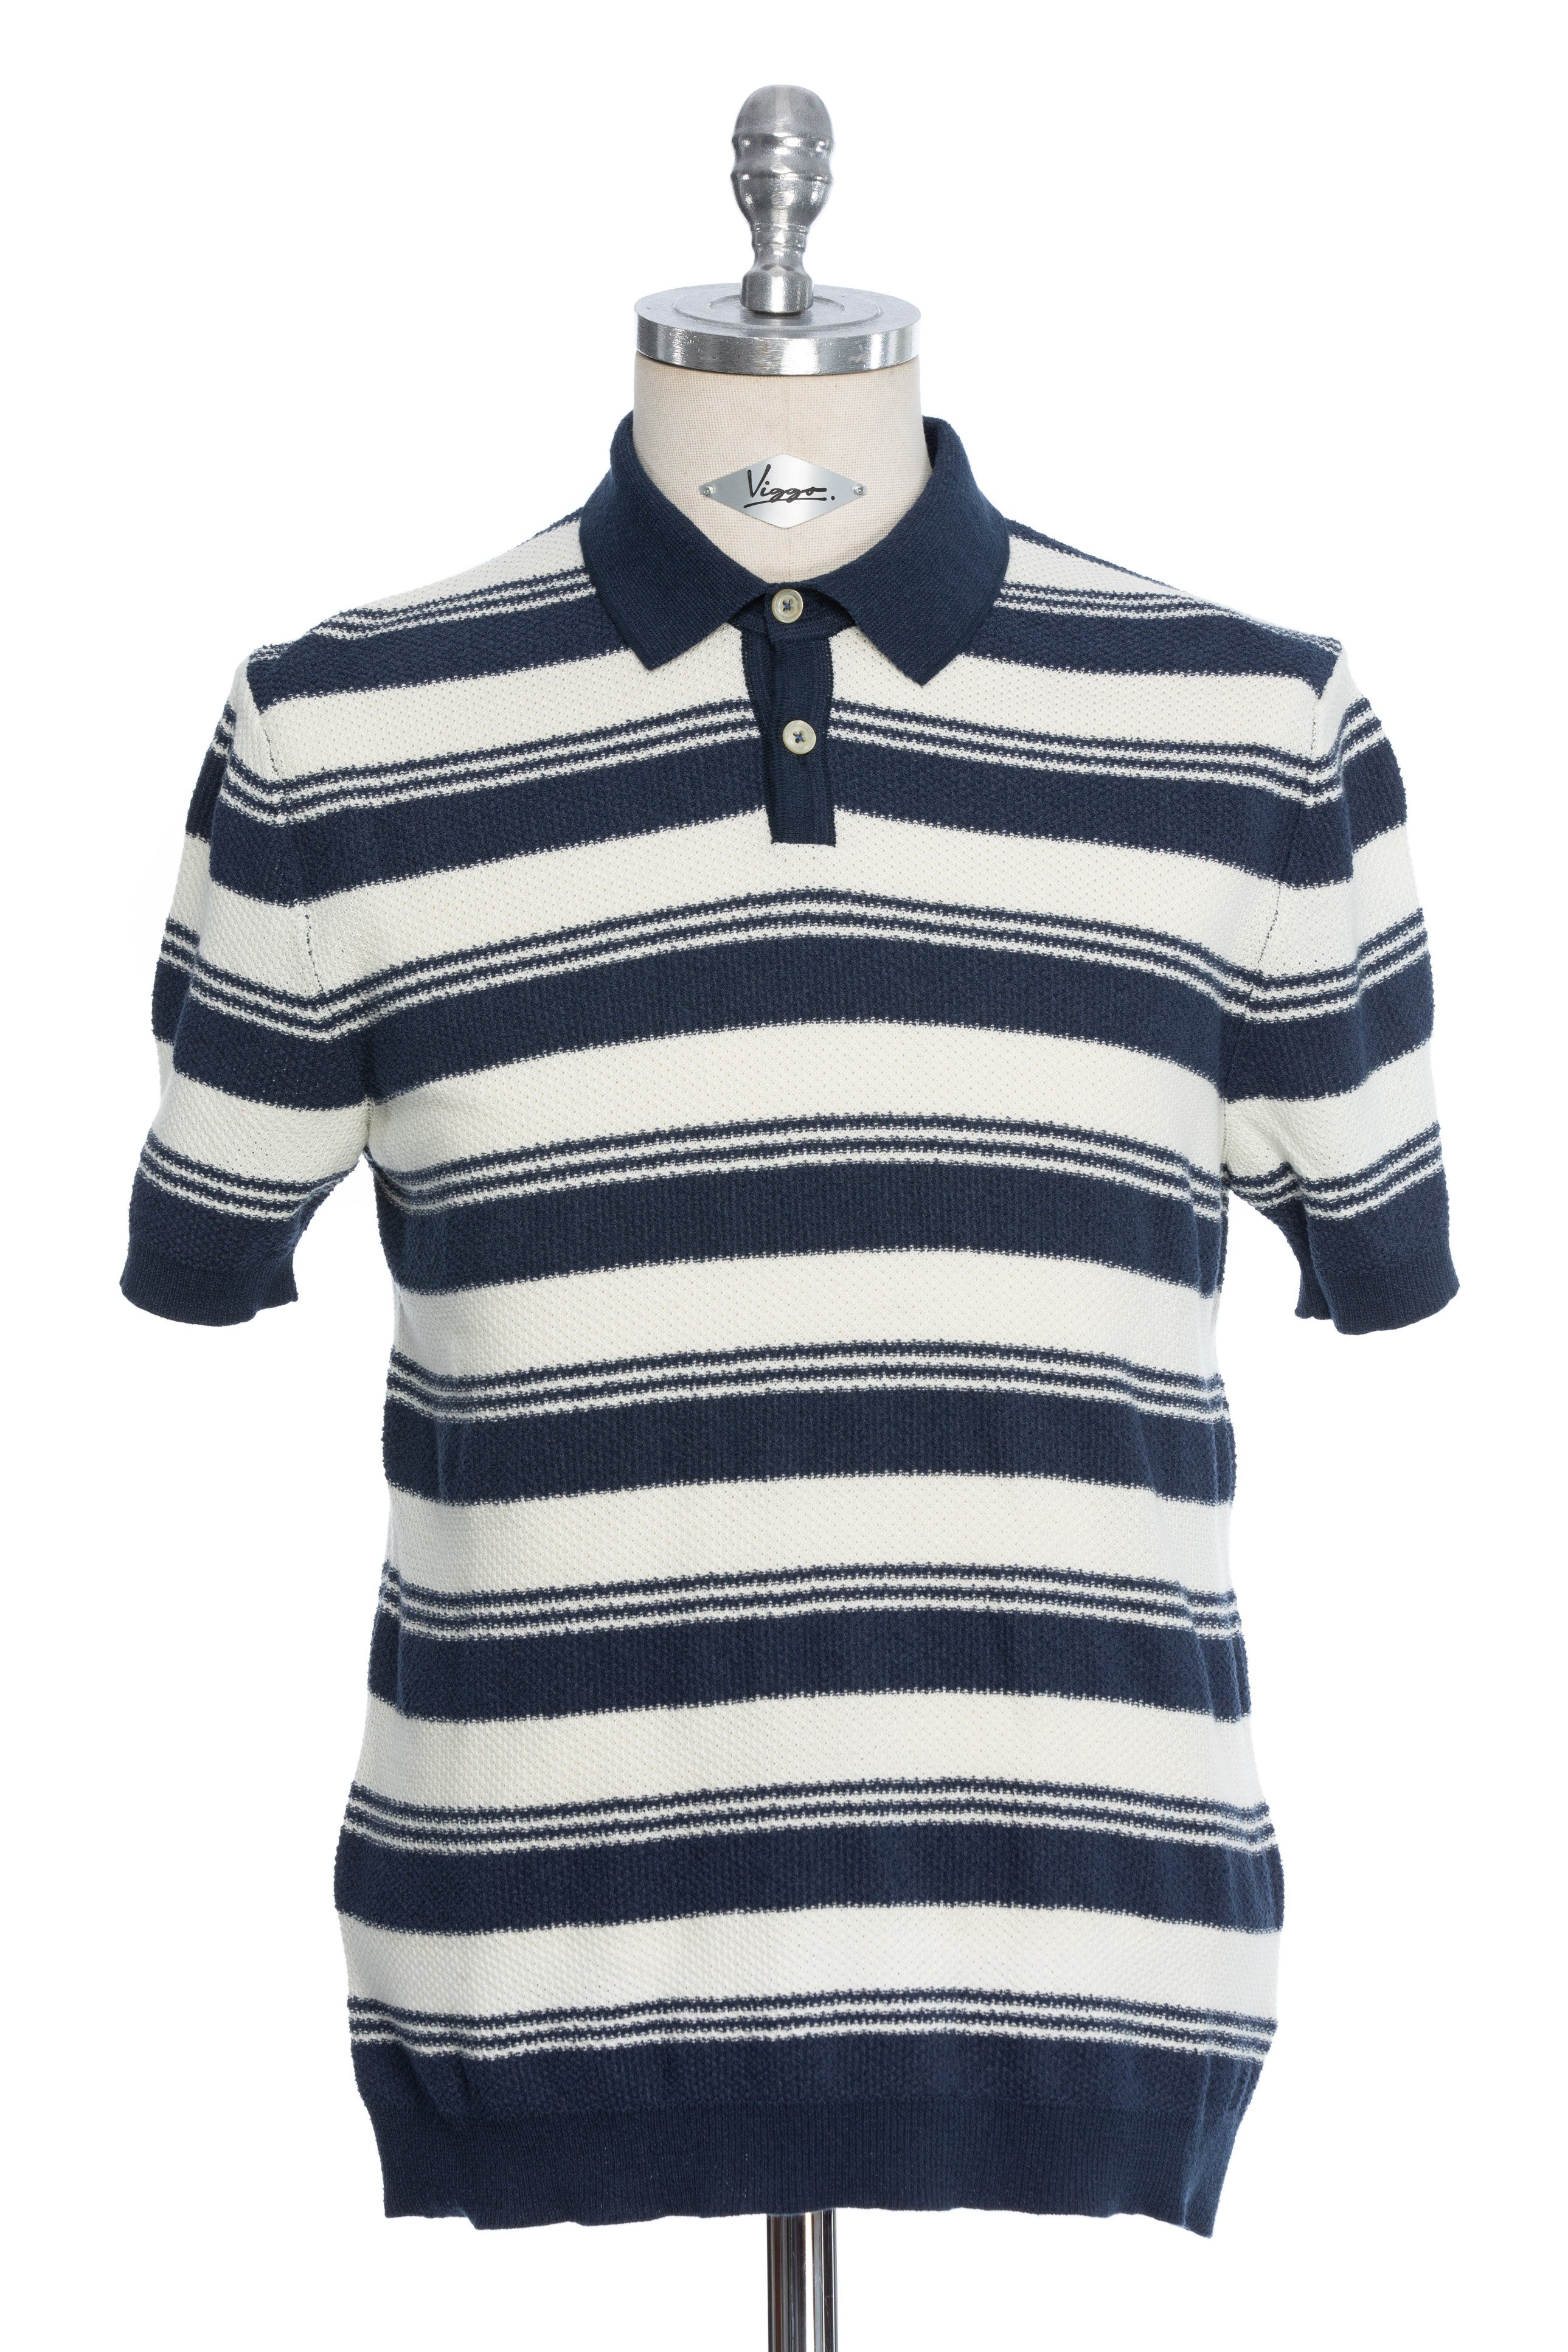 T-Shirt Casual Blu Navy Con Ampie Righe Bianche E Colletto A Polo